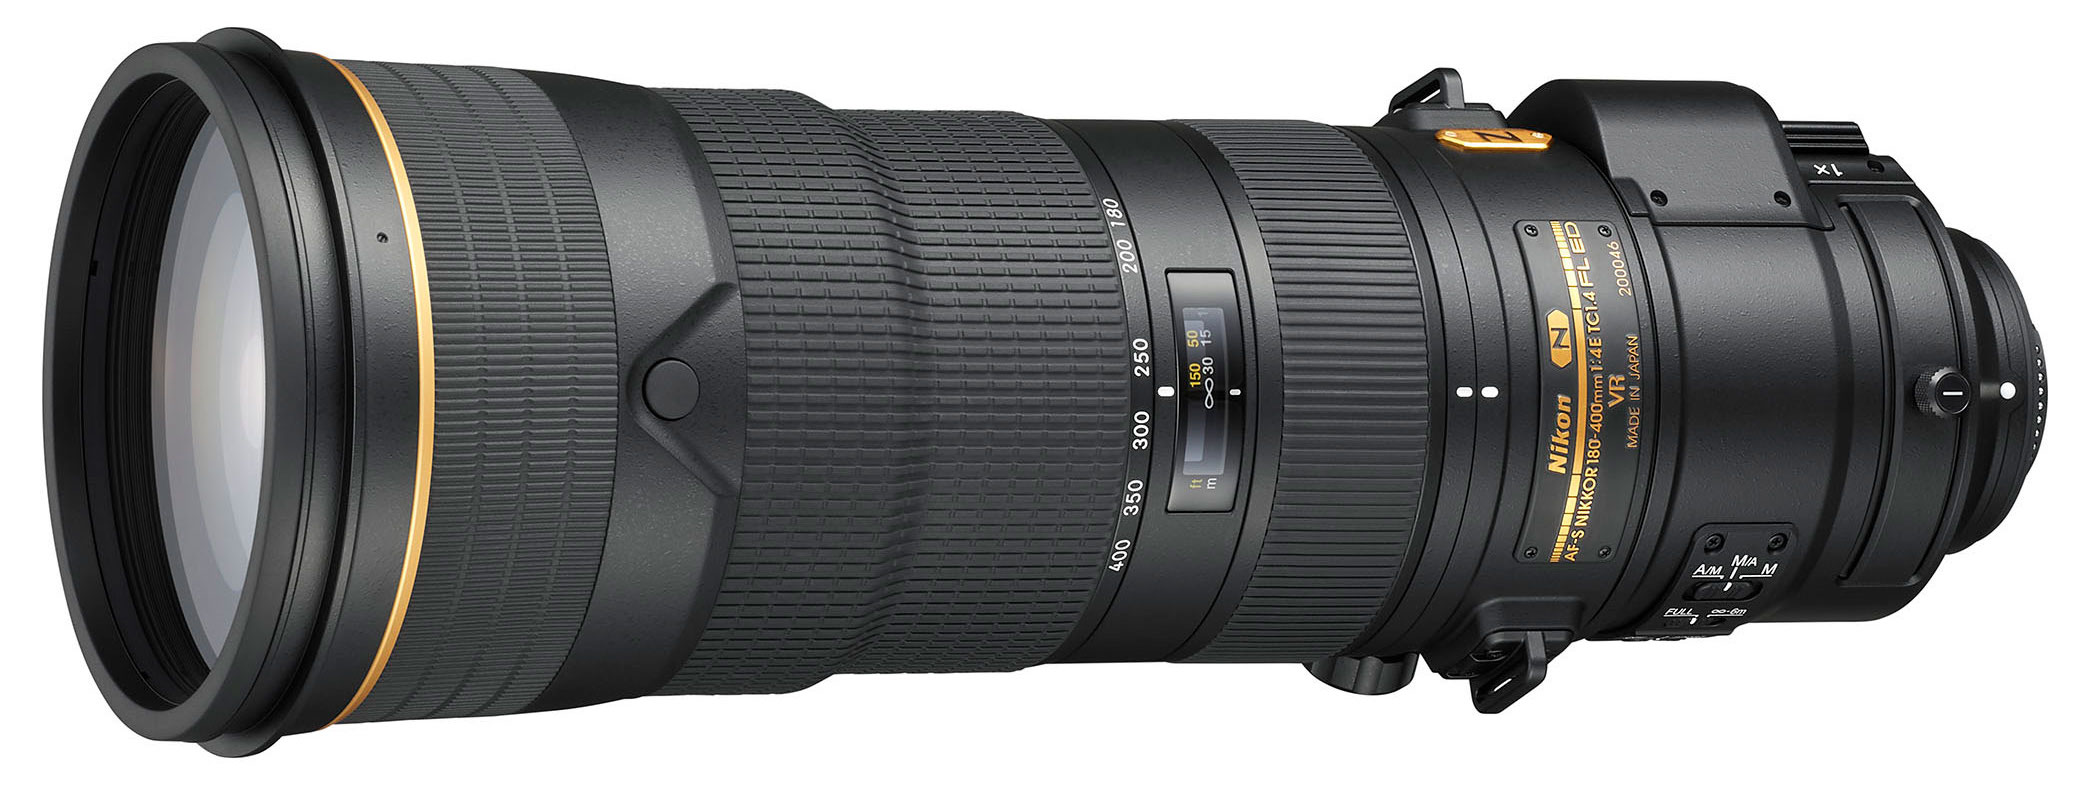 Đang tải Nikkor 180-400mm F4E- Camera.tinhte.vn 2.jpg…